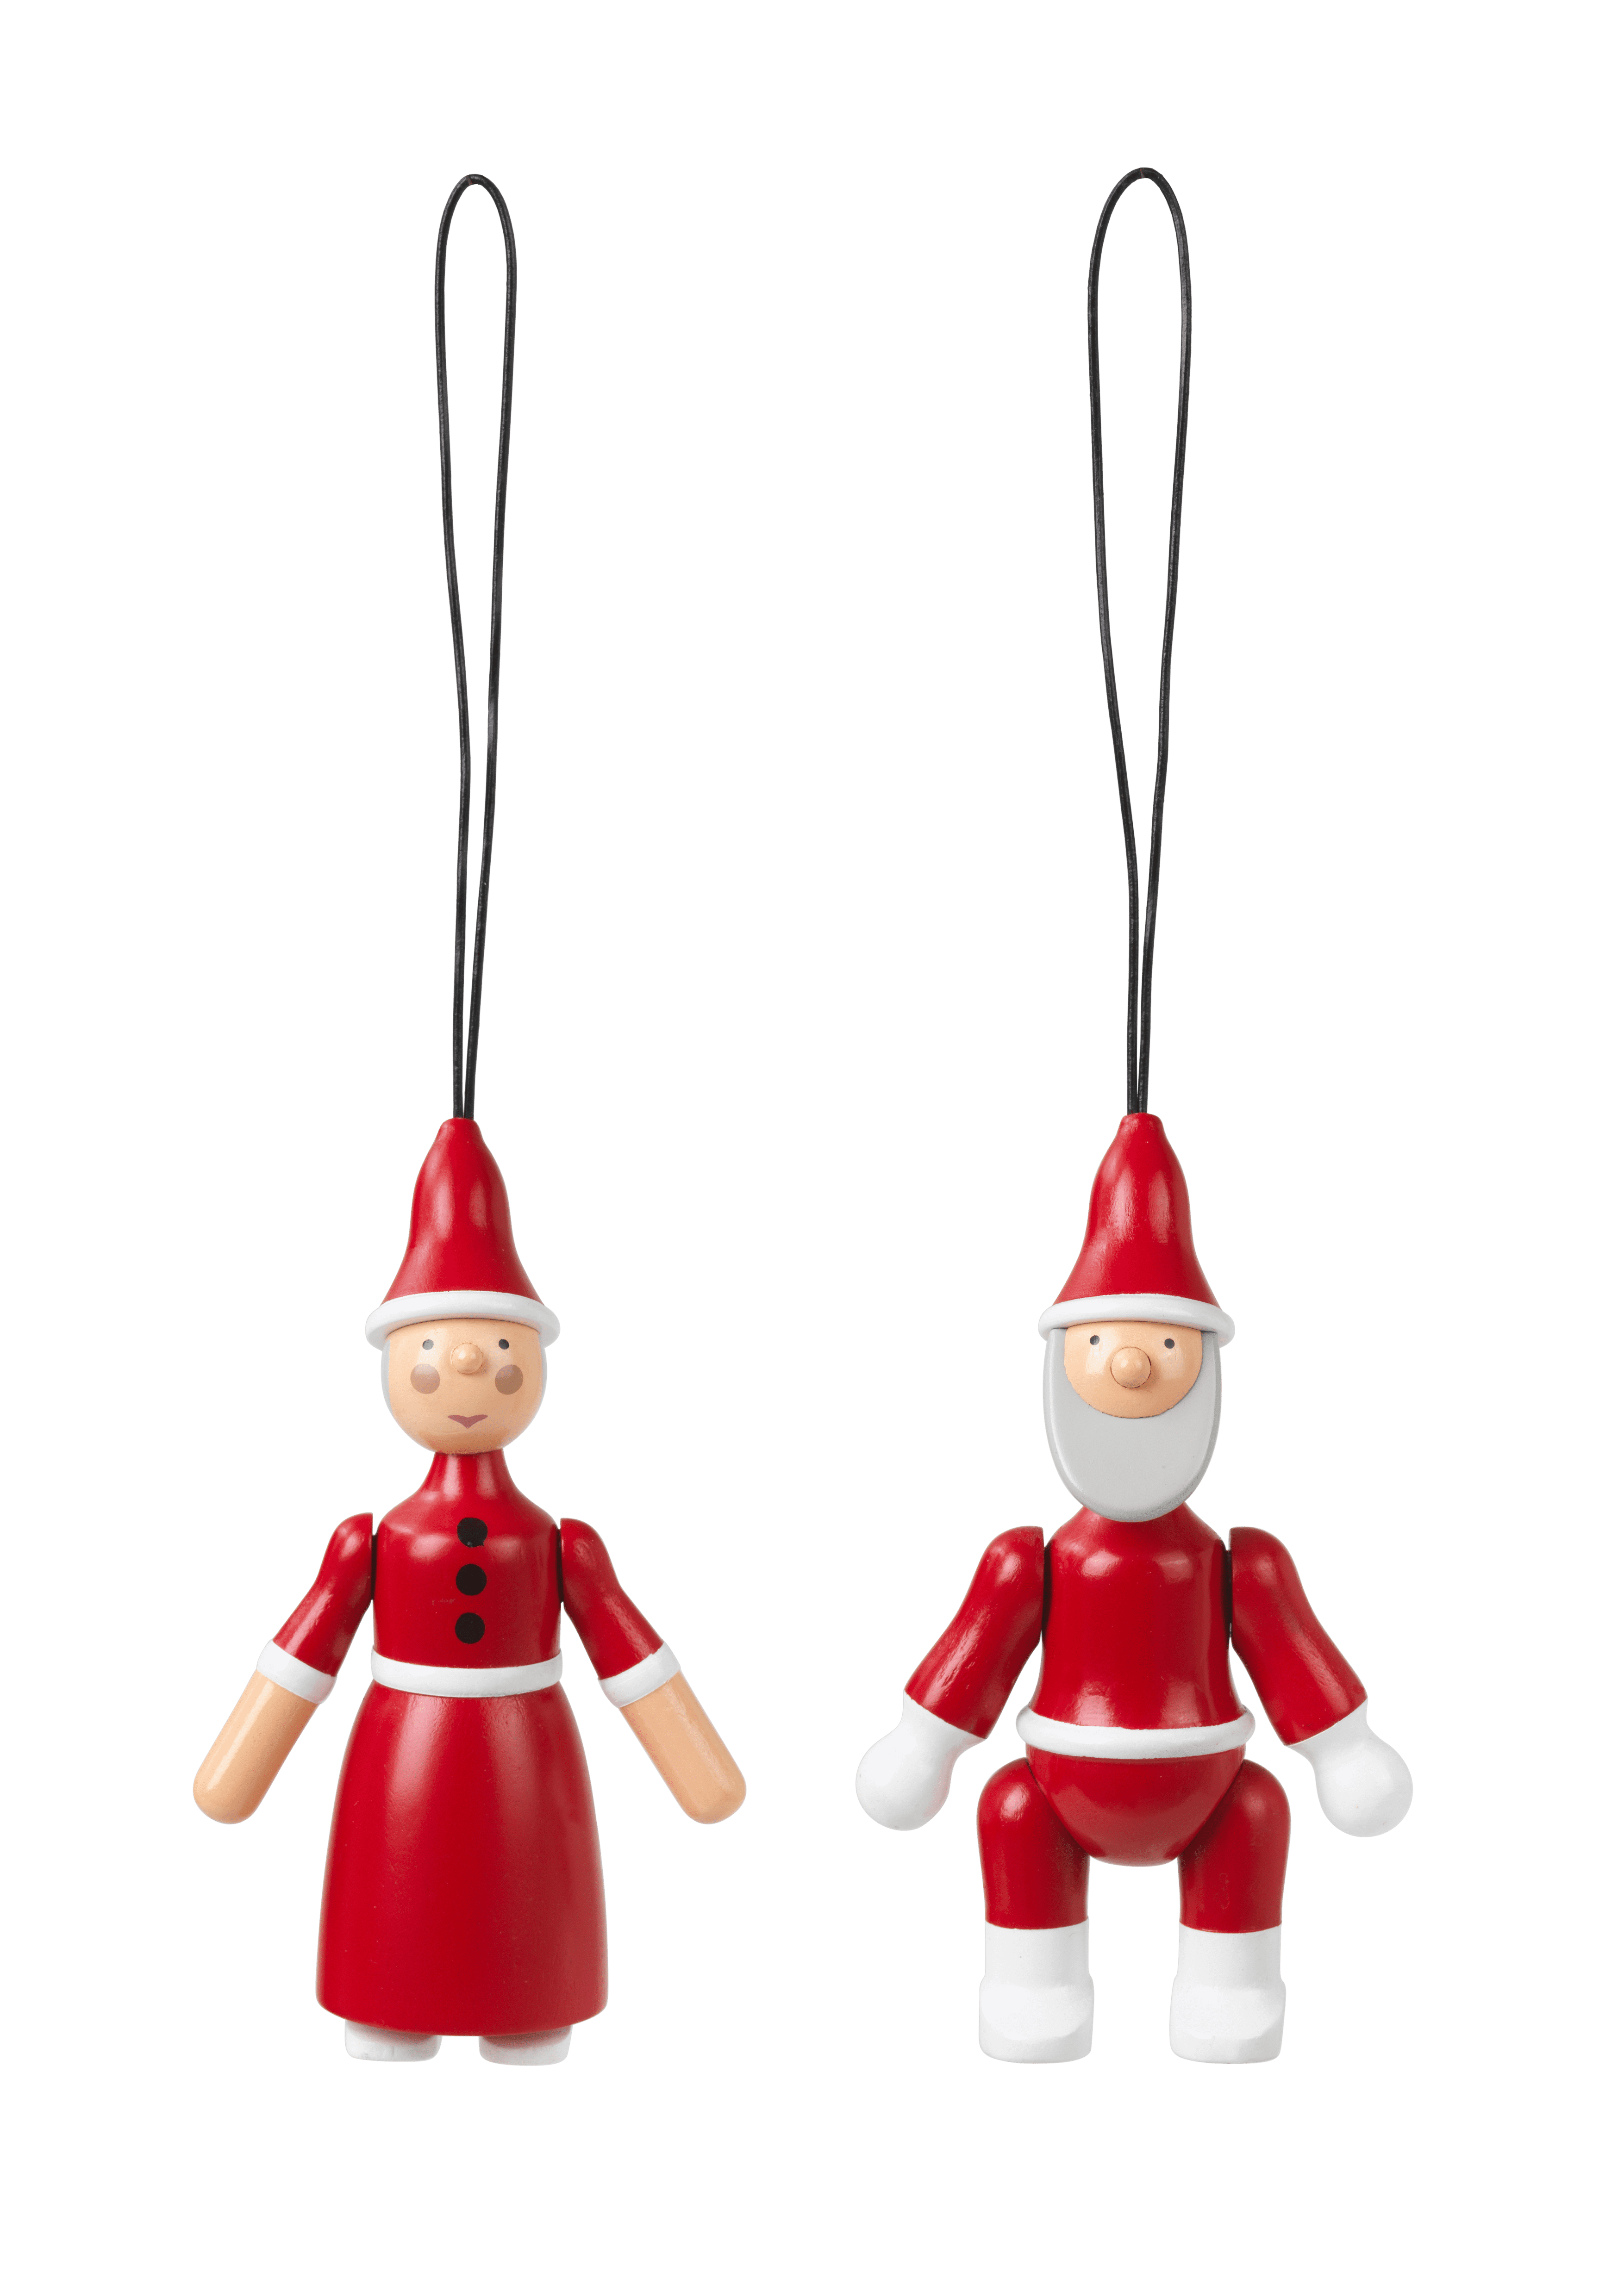 Santa Claus and Santa Clara